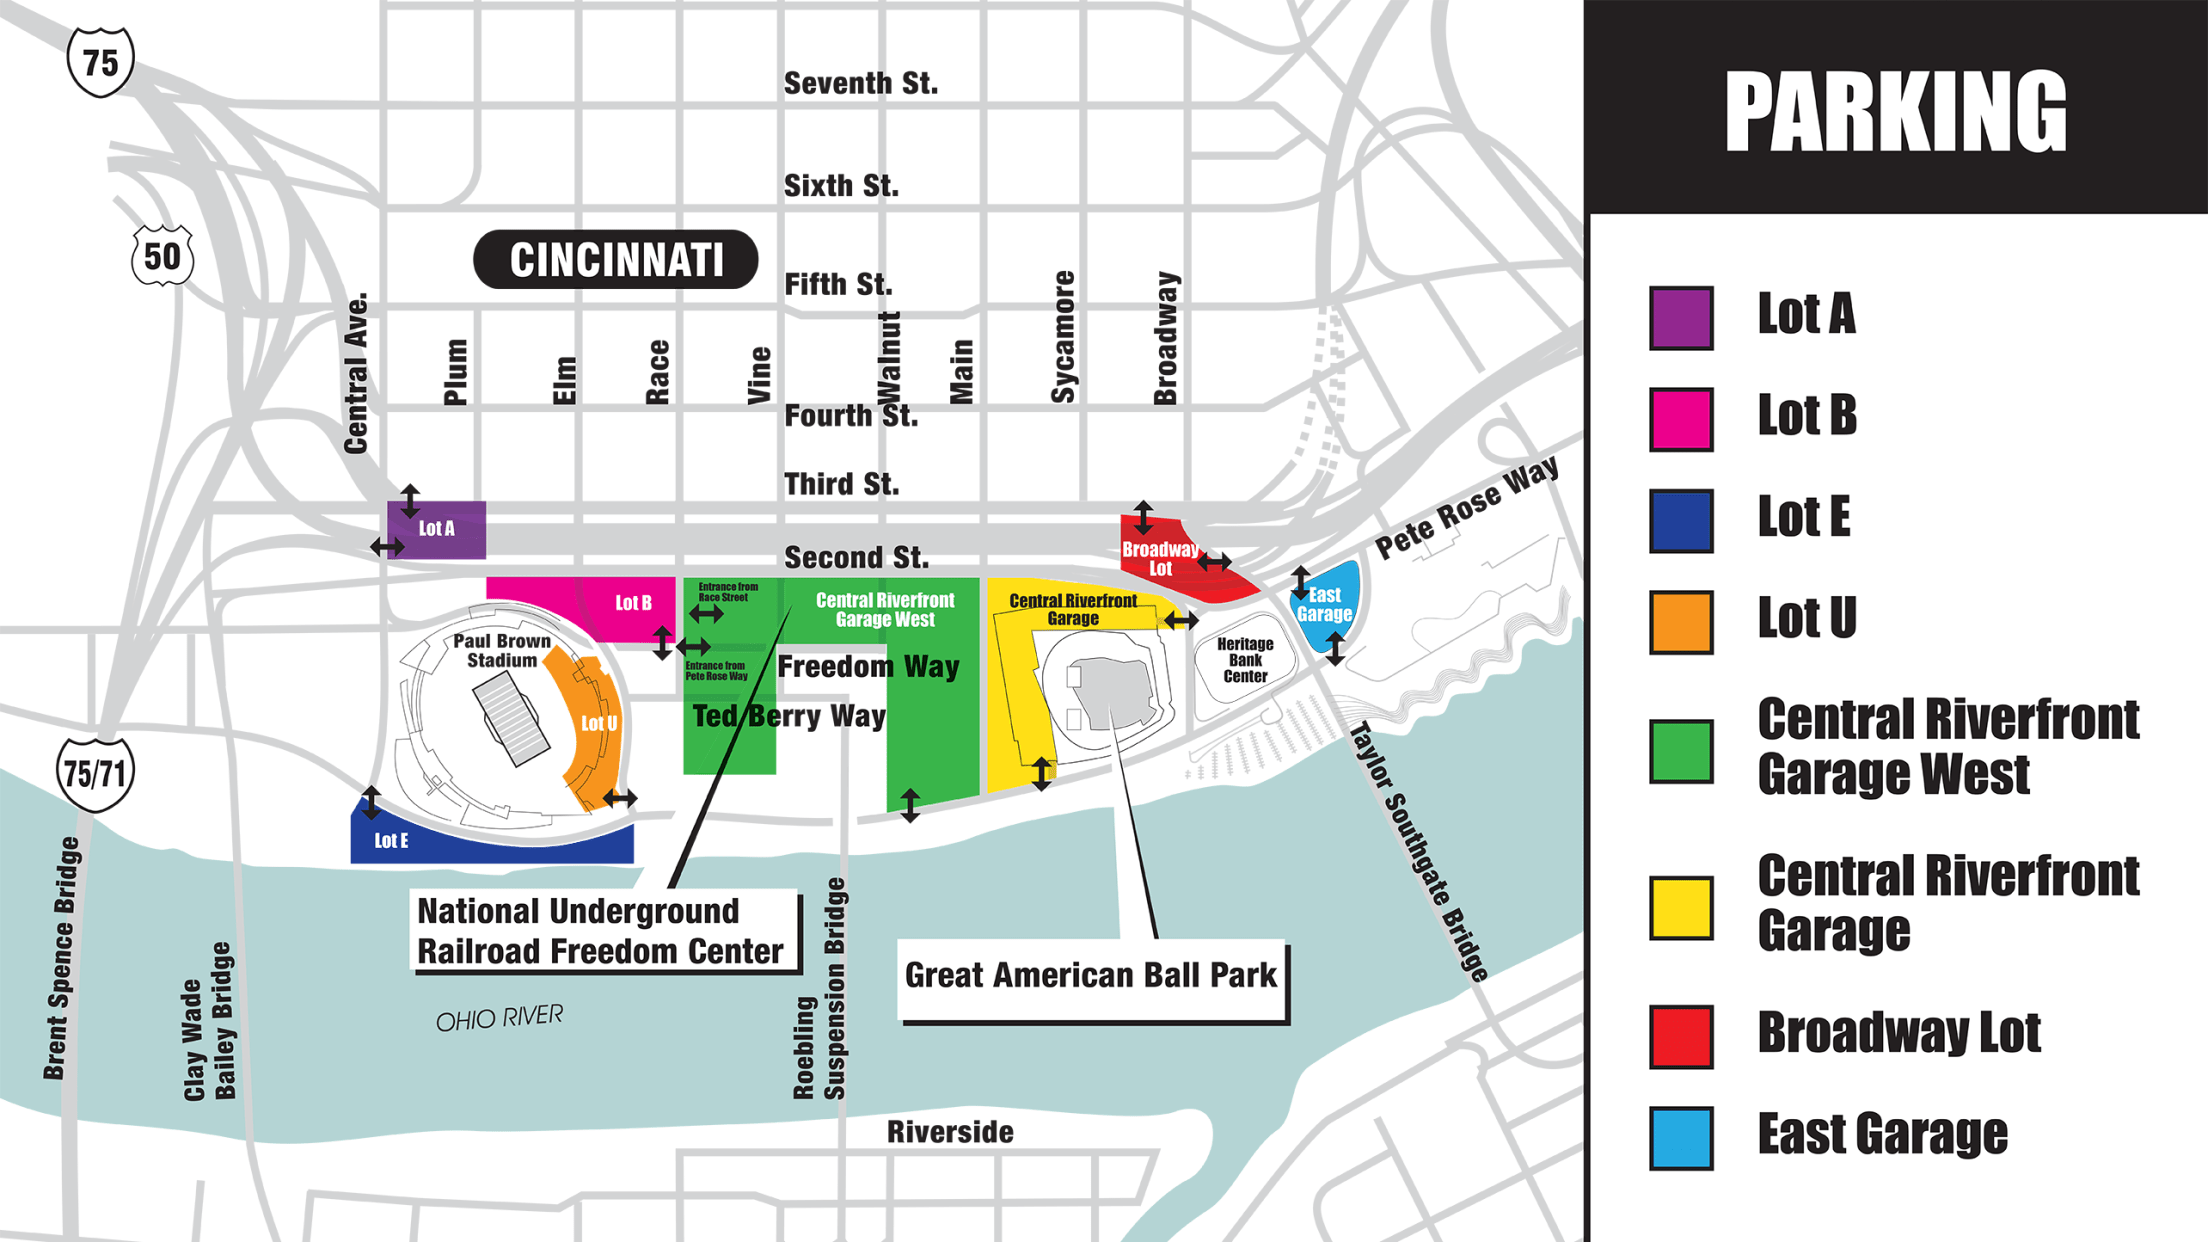 Where to Park for Cincinnati Reds Games